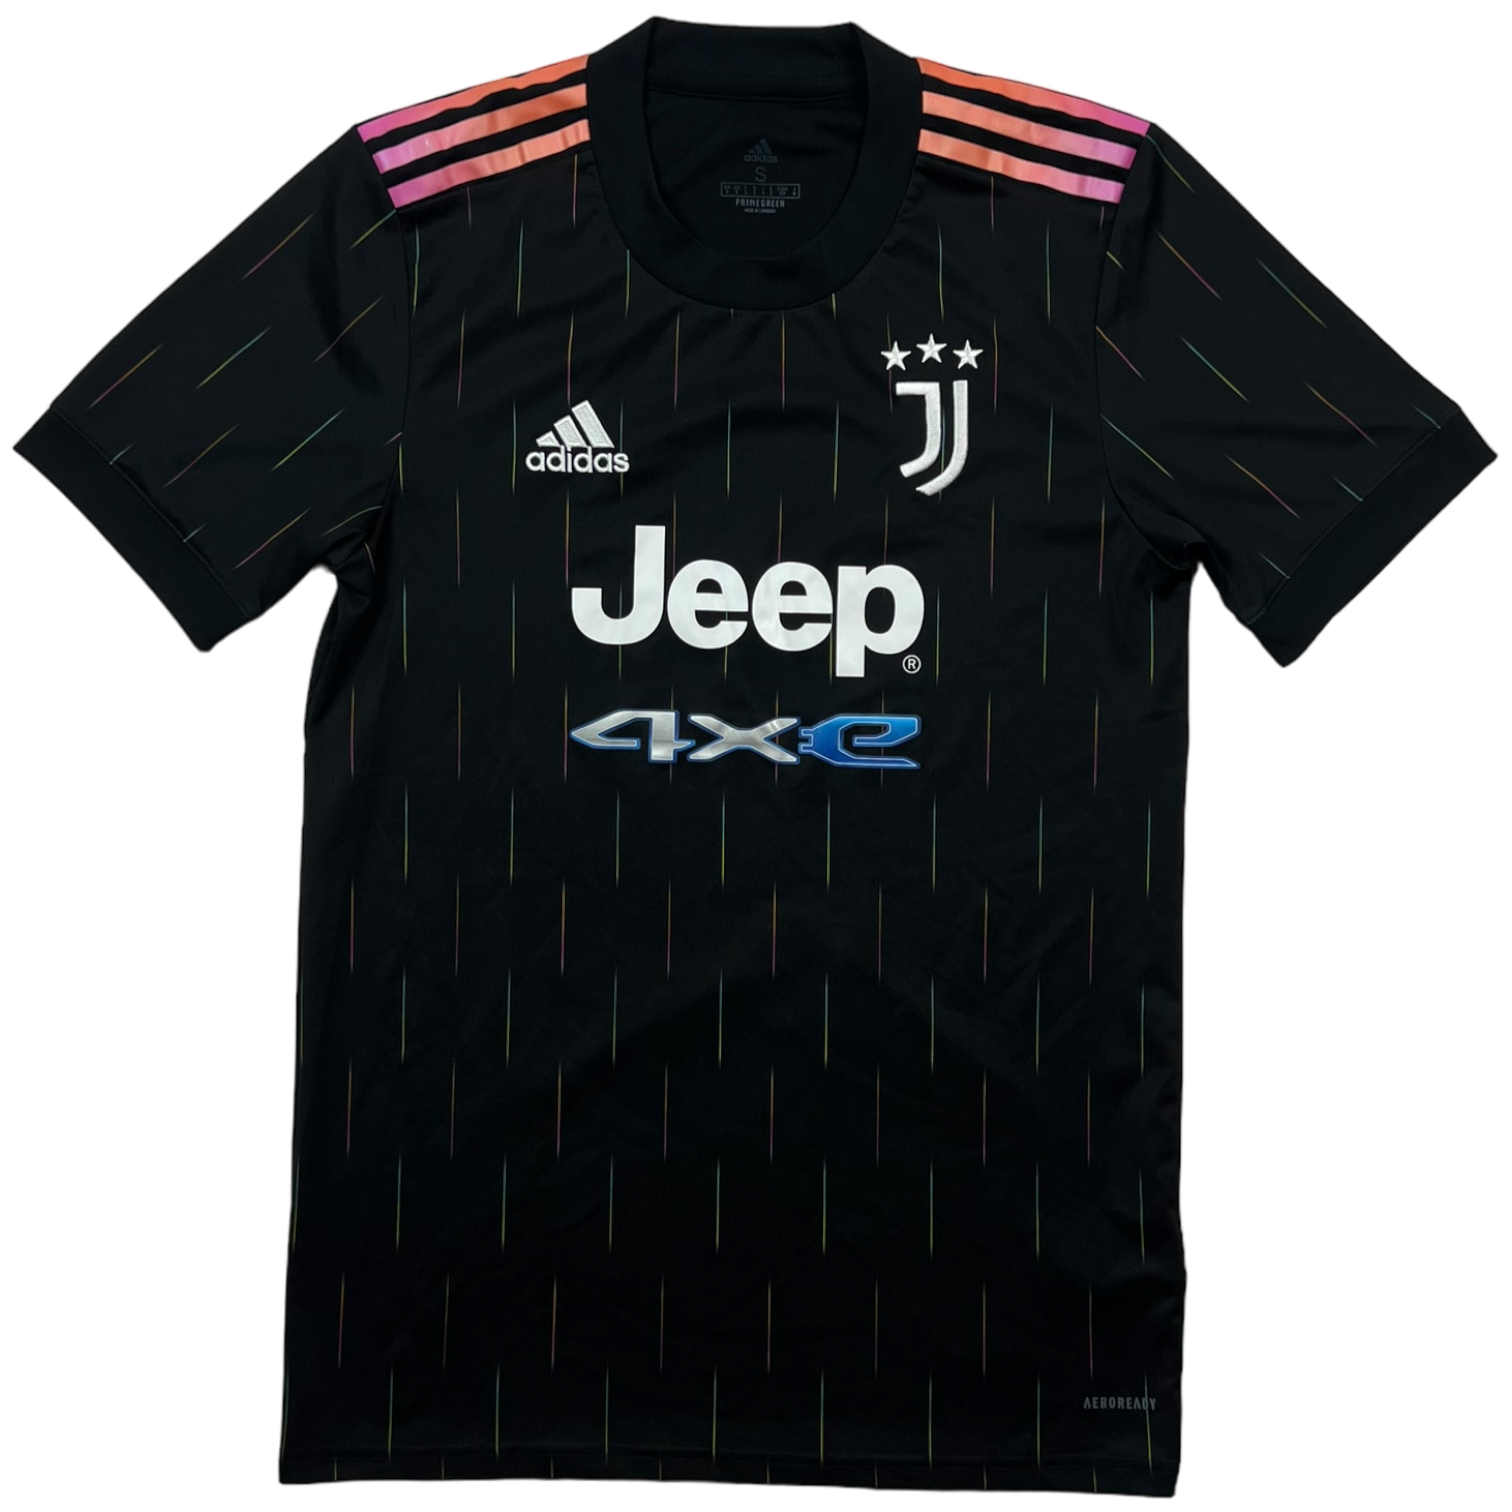 Adidas Juventus Jersey (S)